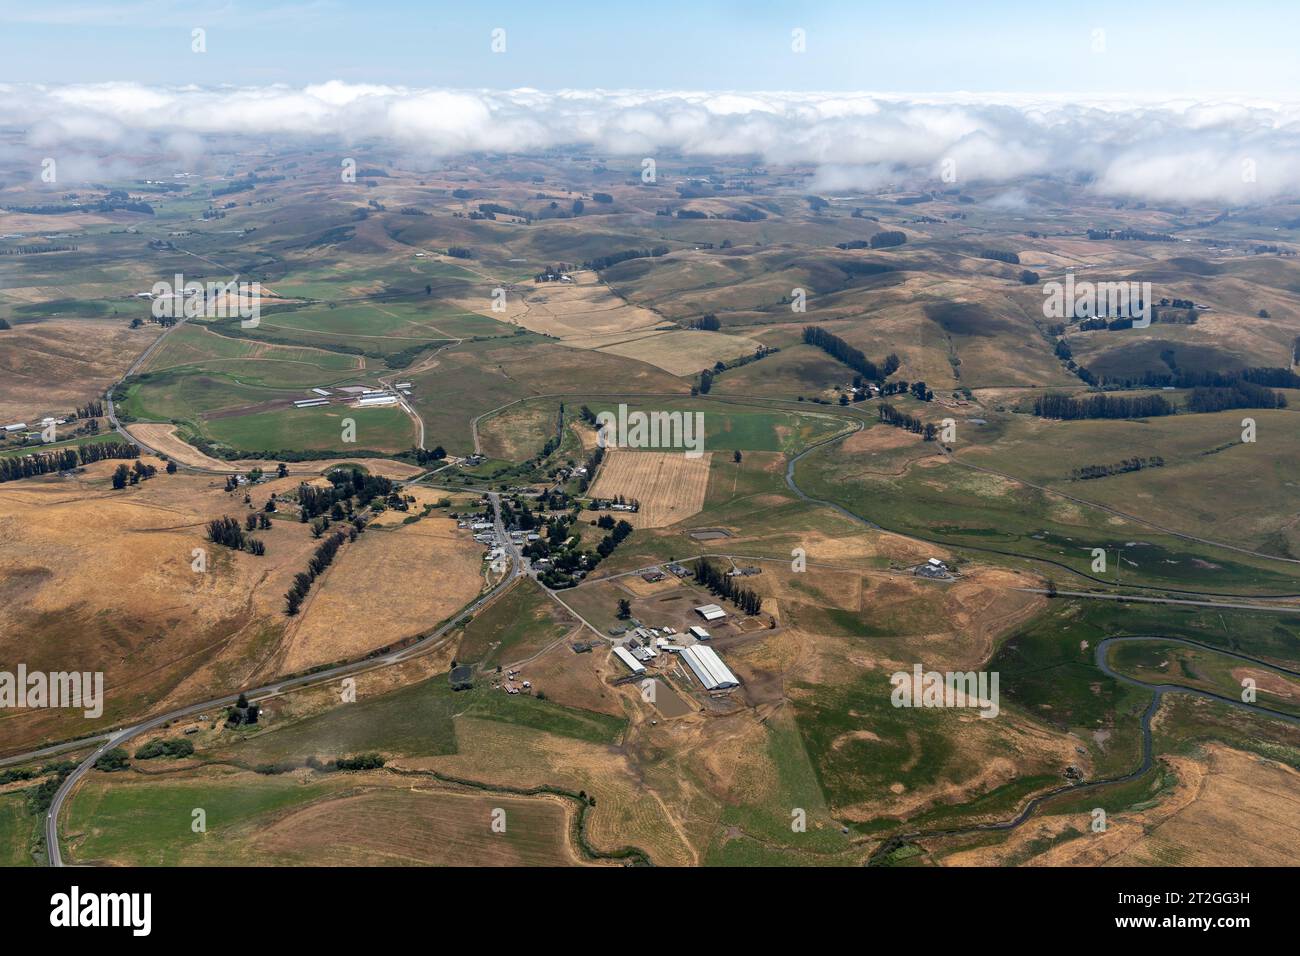 Les nuages dérivent au-dessus des collines du pays viticole avec vue aérienne des fermes et des vignobles ci-dessous Banque D'Images